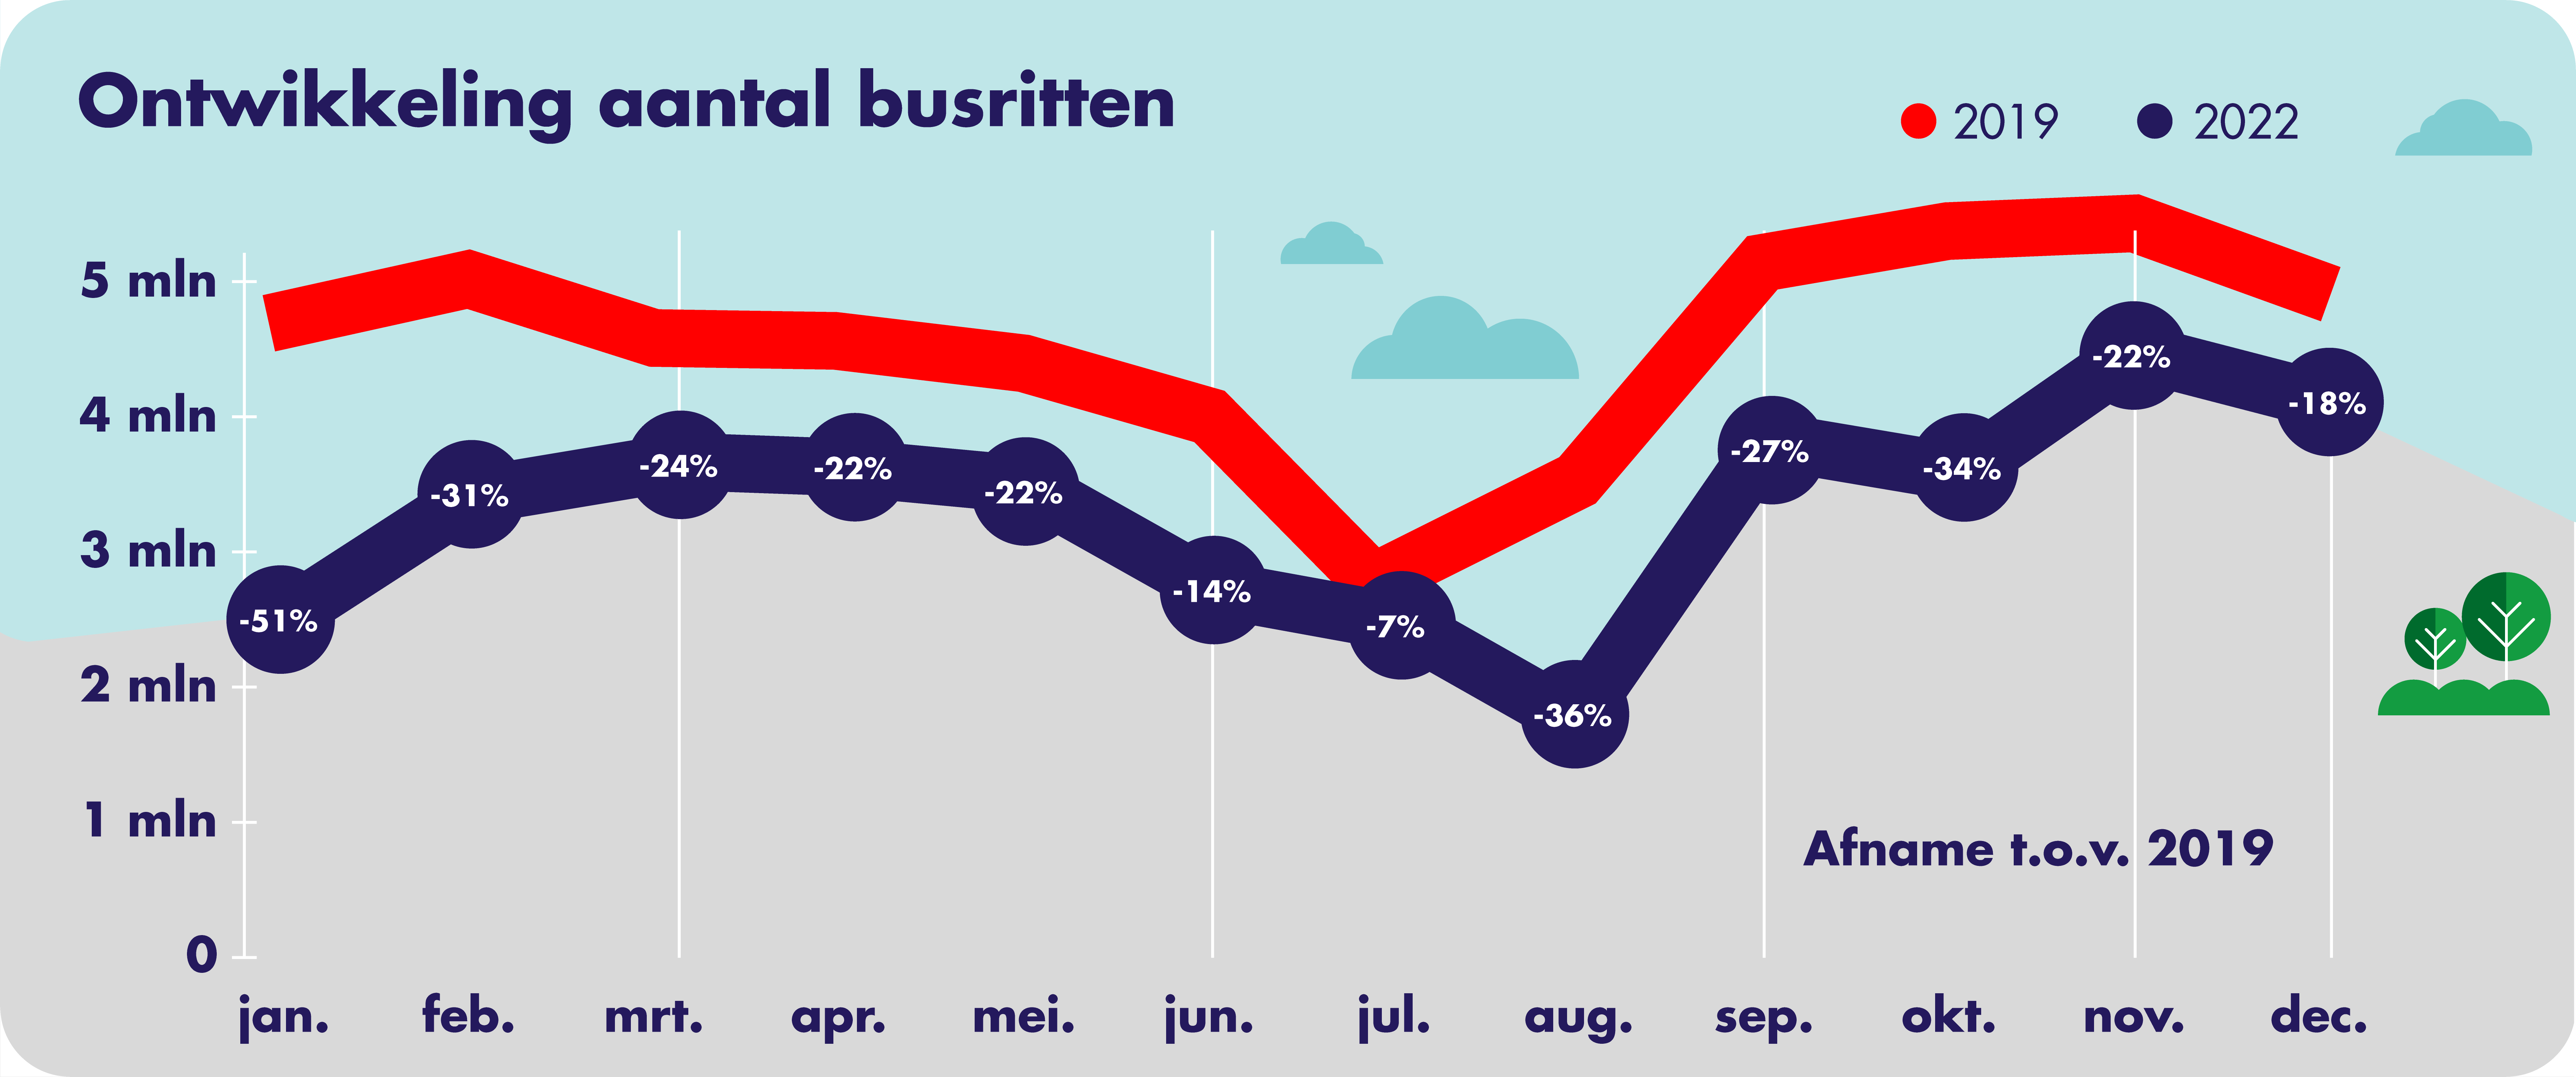 Op deze afbeelding is het aantal gemaakte busritten per concessiegebied door het jaar heen weergegeven. Er wordt een vergelijking gemaakt tussen 2019 en 2022. In de zomermaanden is de afname van het aantal gemaakte busritten minder groot.